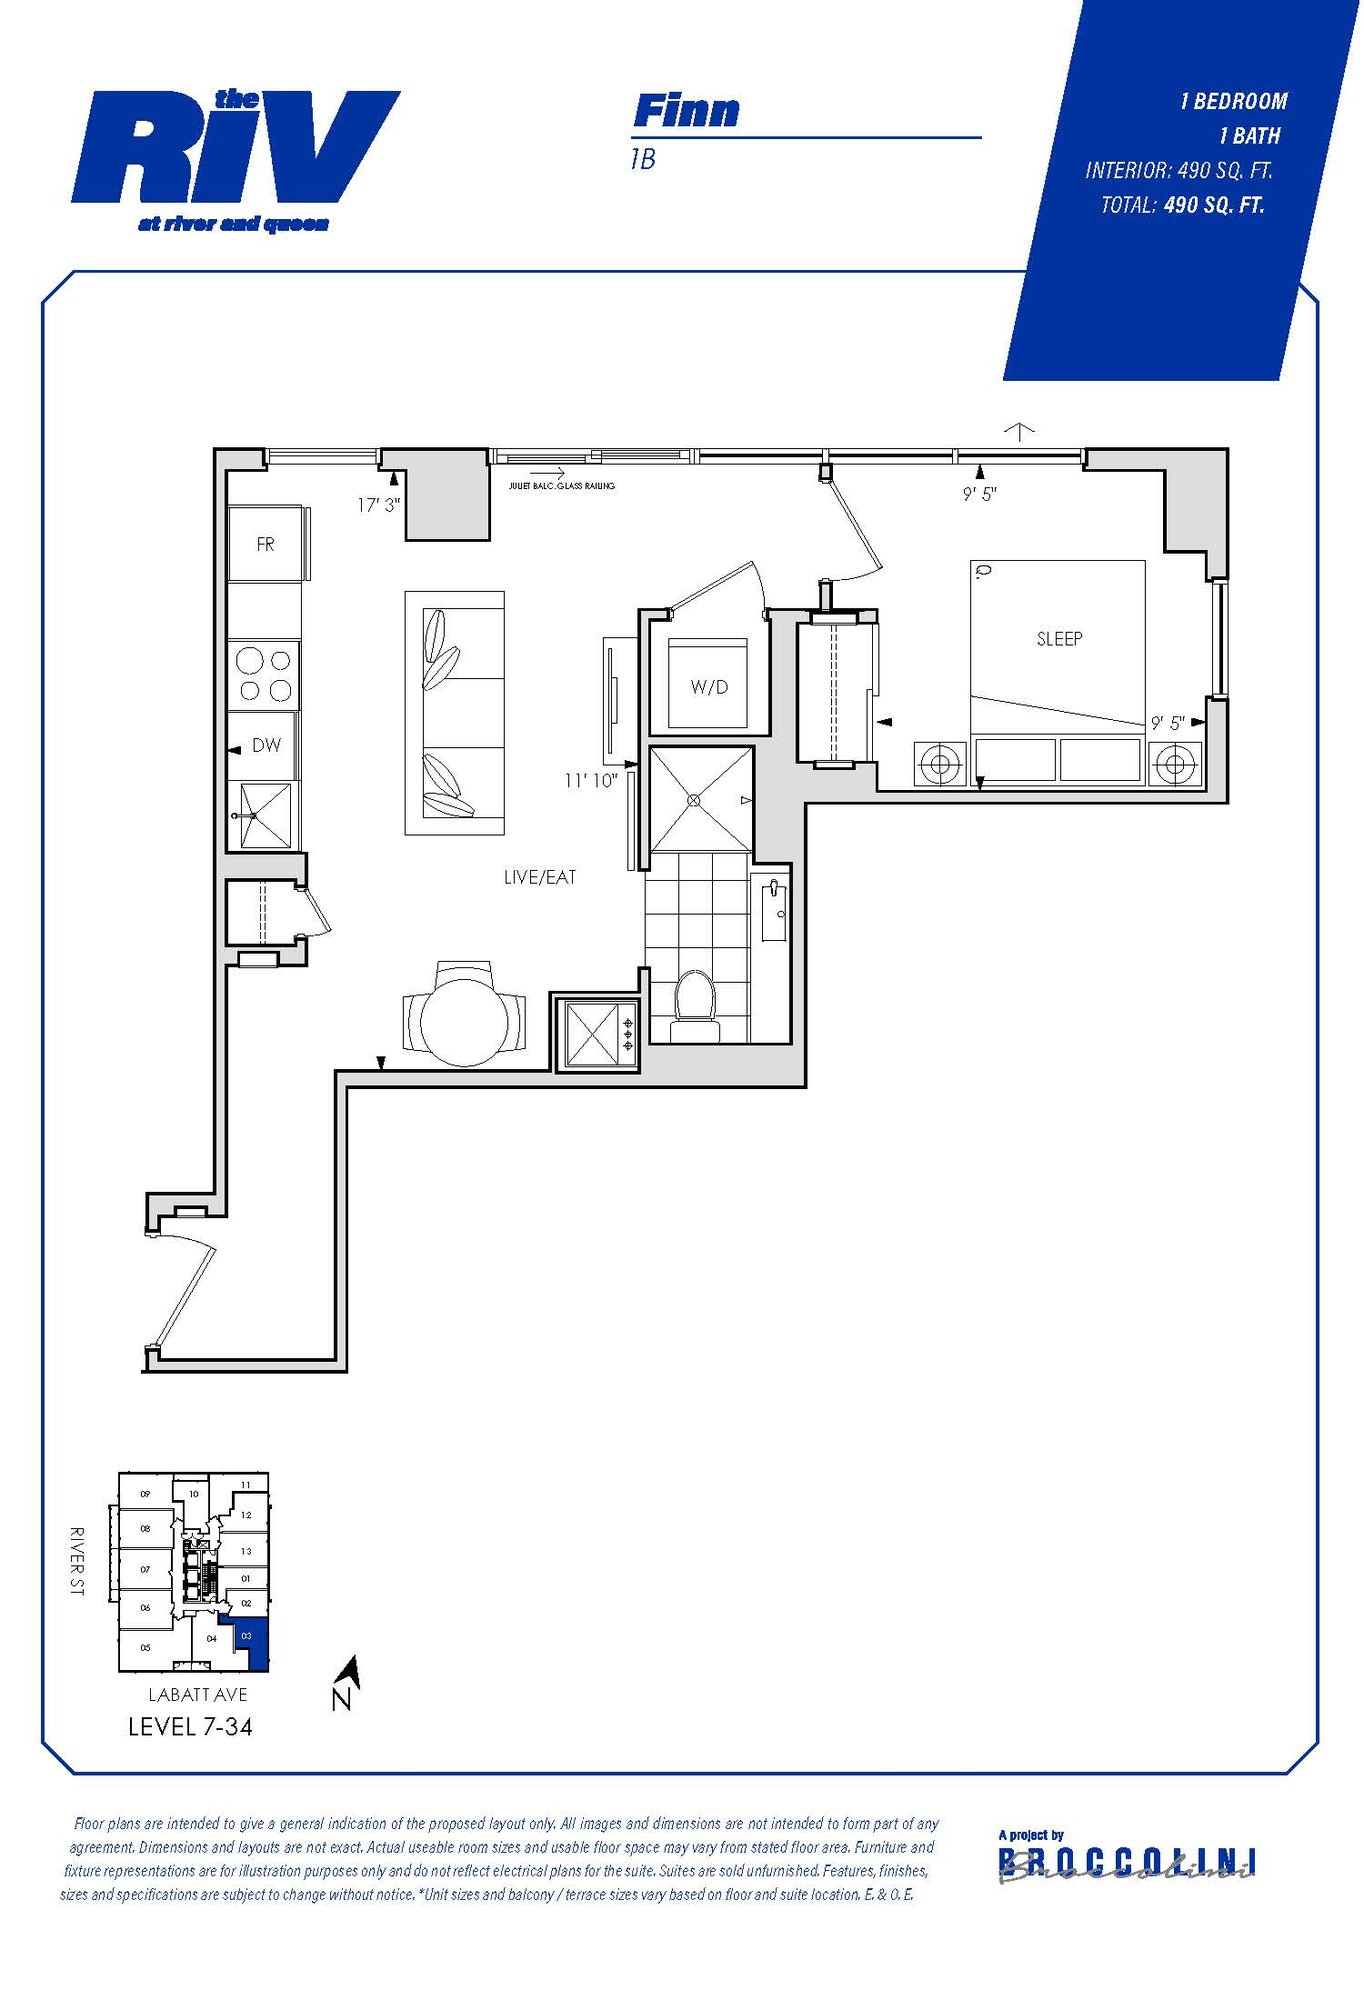 Floor plan for Finn one bedroom unit in The Riv